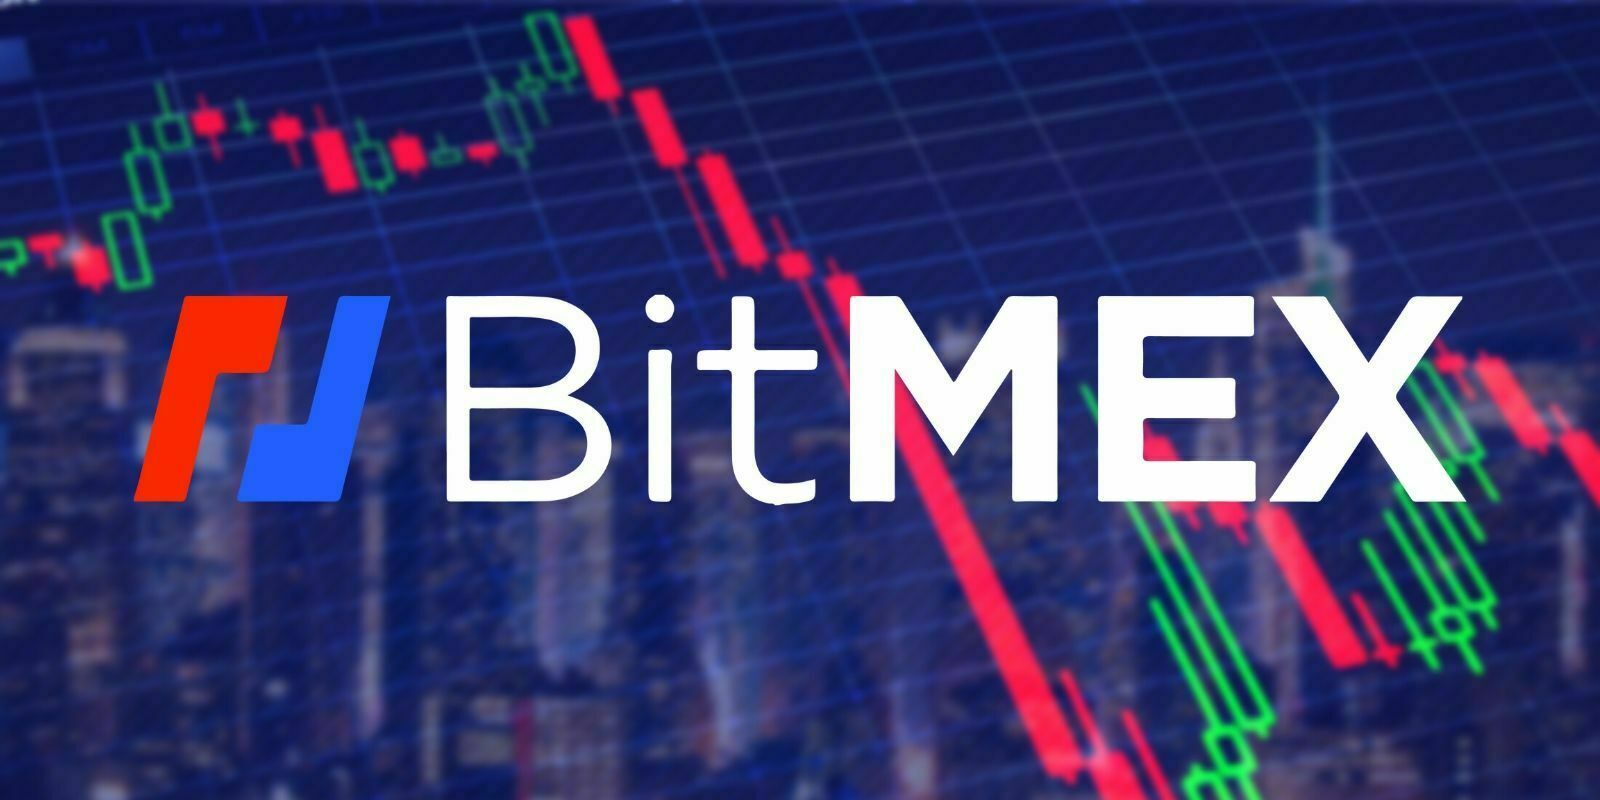 BitMEX explique pourquoi le Bitcoin a failli atteindre 0$ la semaine dernière